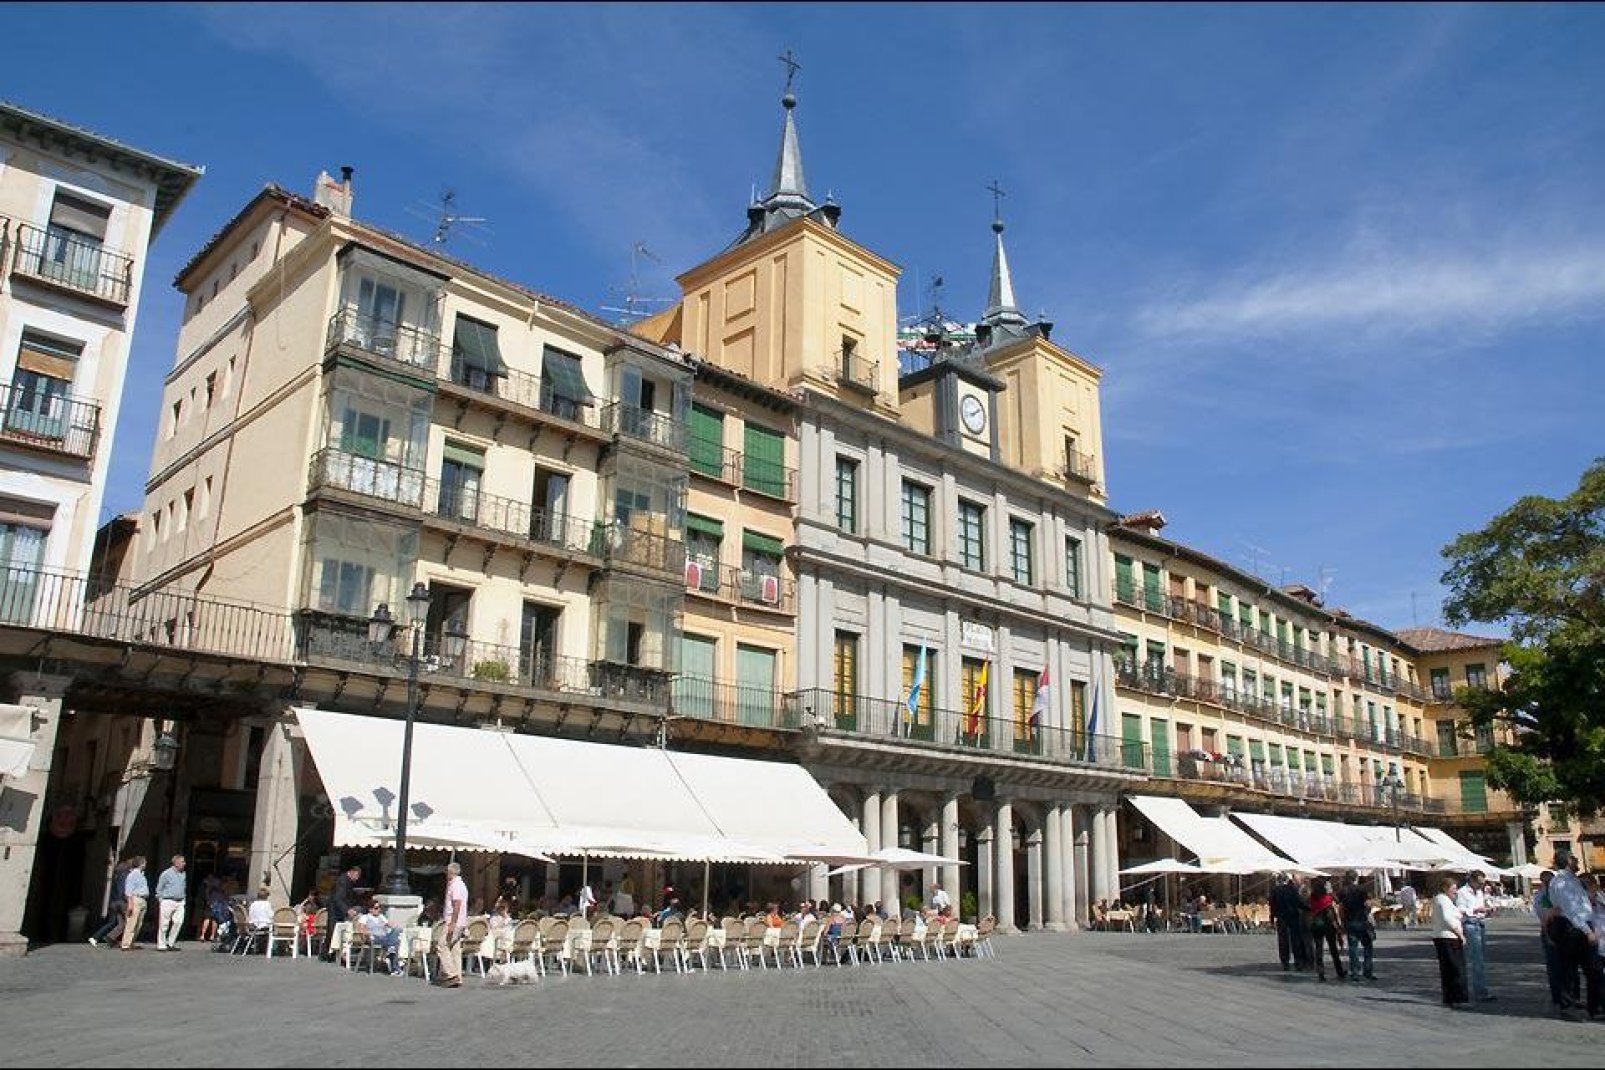 Segovia ist die Hauptstadt der gleichnamigen Provinz. Es handelt sich um eine Großstadt in der spanischen Gemeinschaft Kastilien und Léon. Sie befindet sich ungef. 100 km vor Madrid.